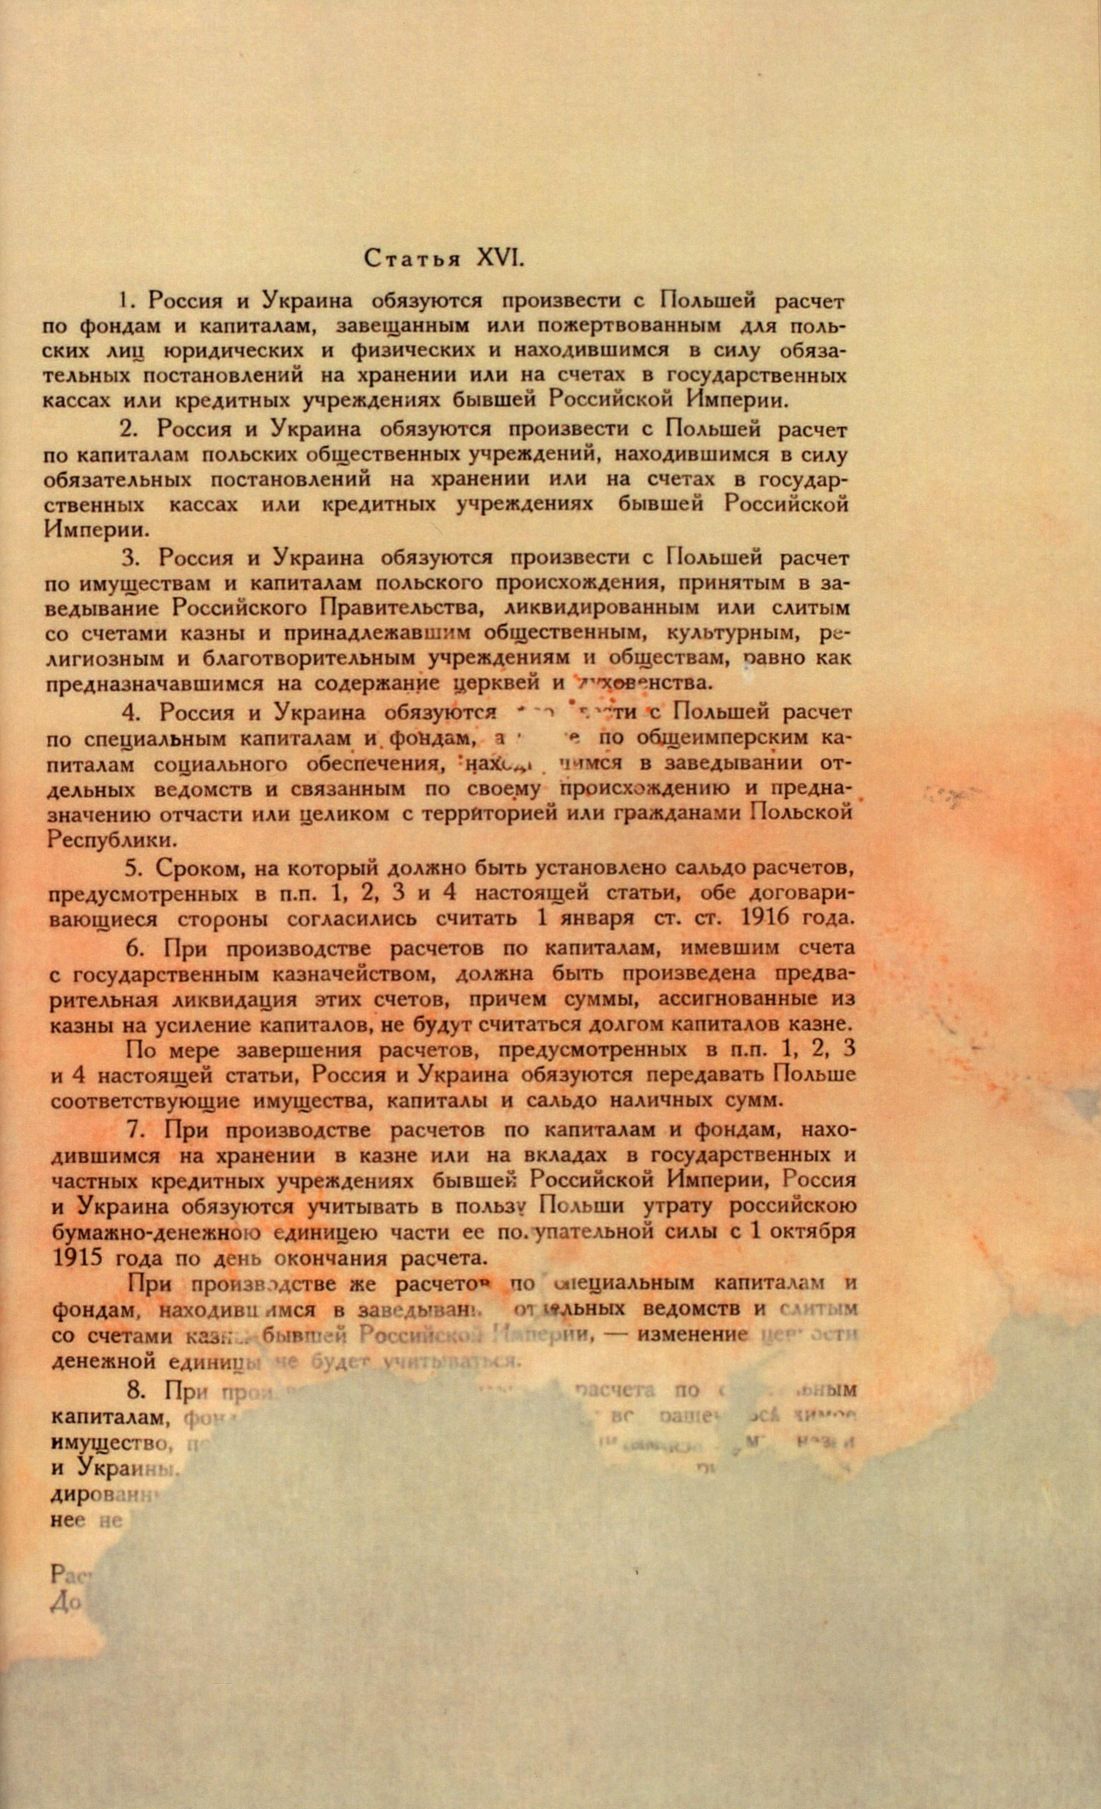 Traktat Pokoju między Polską a Rosją i Ukrainą podpisany w Rydze dnia 18 marca 1921 roku, s. 83, MSZ, sygn. 6739.